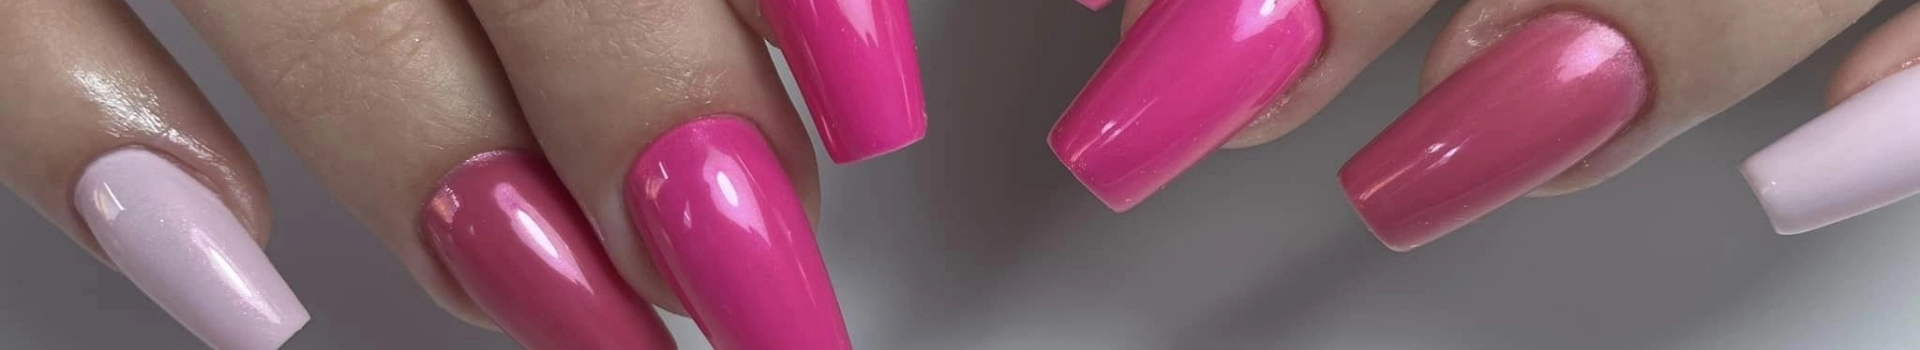 Paznokcie pomalowane na różne odcienie różowego